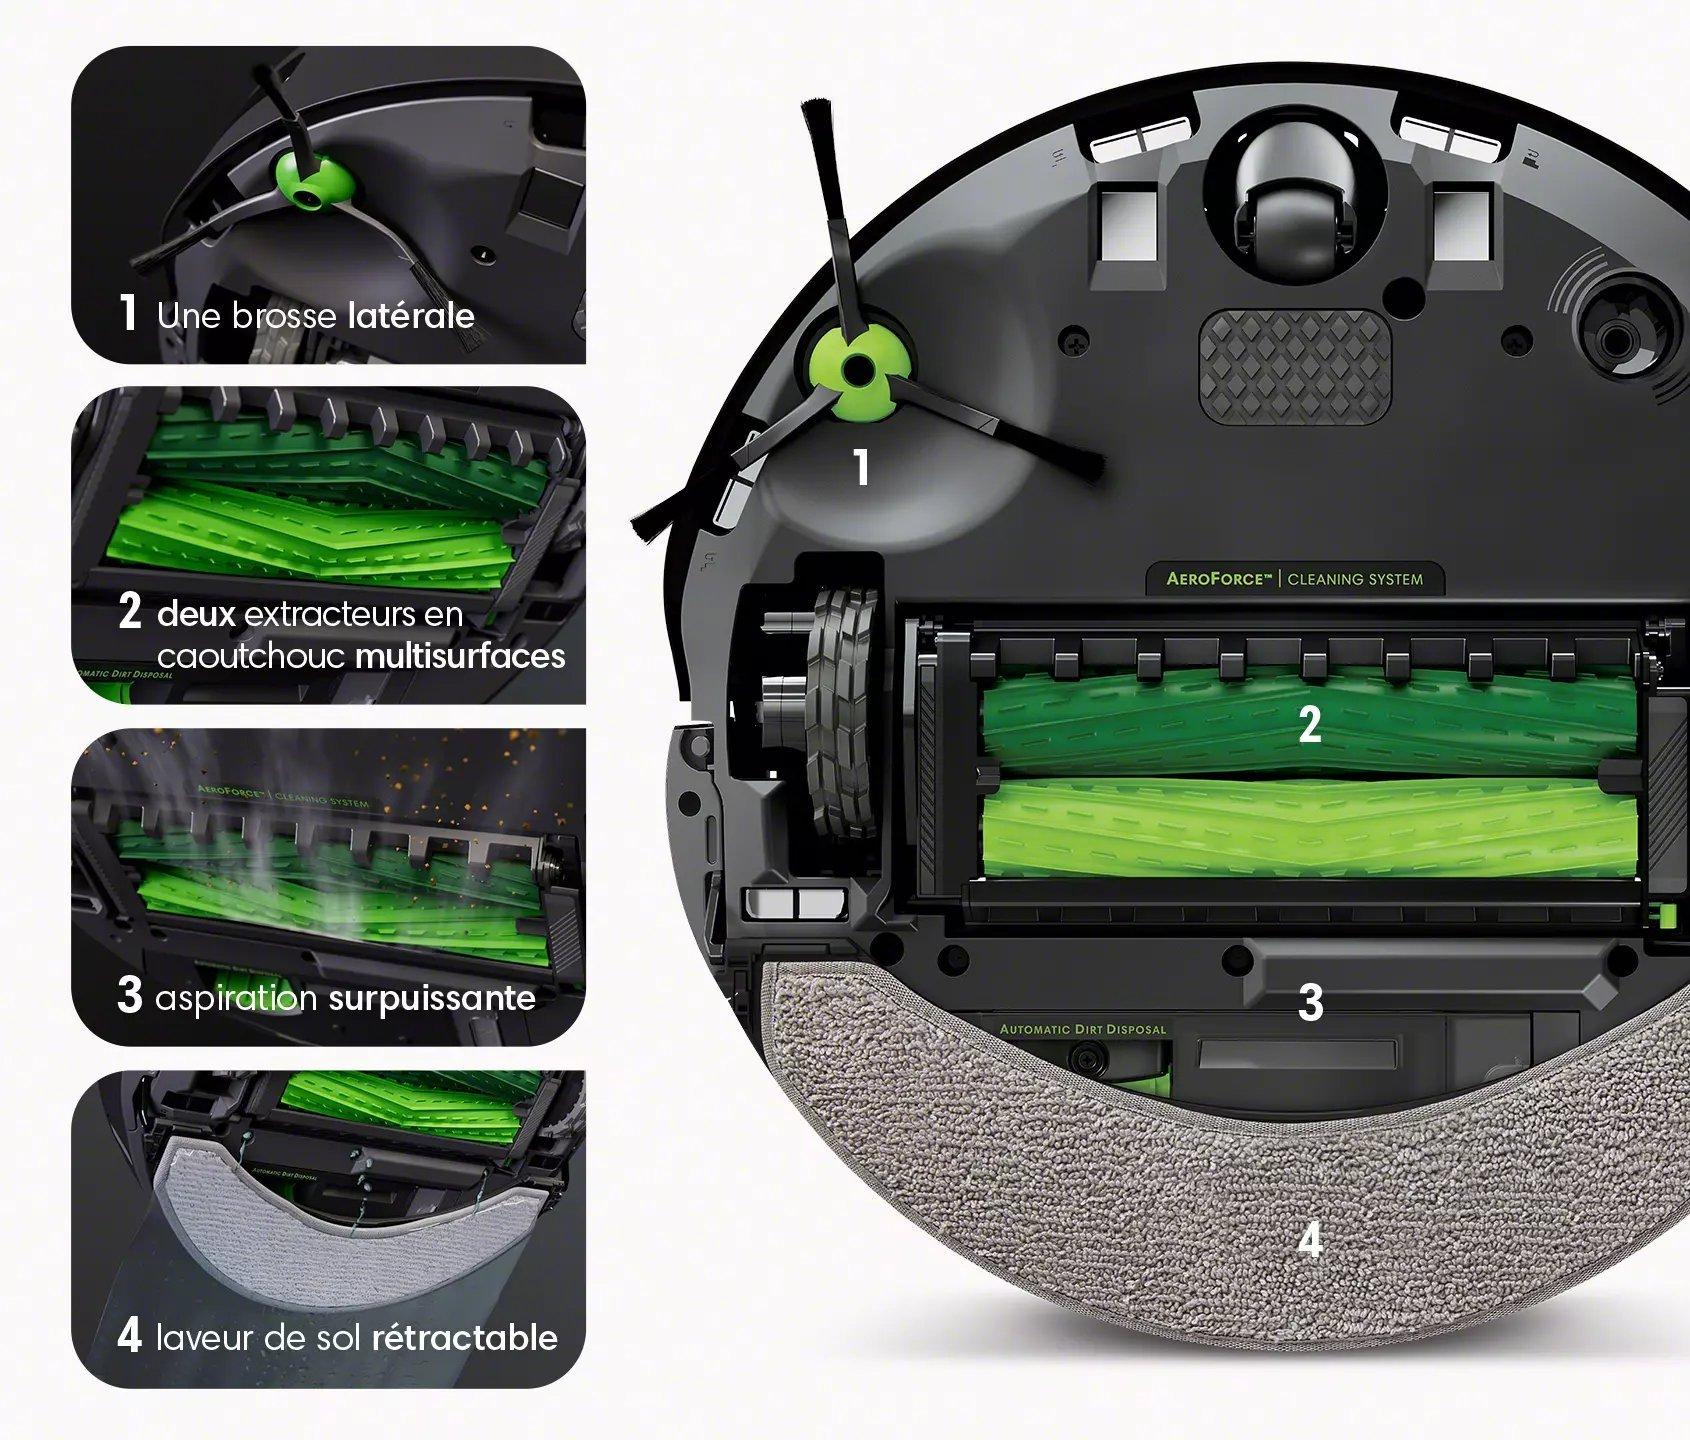 iRobot Roomba Combo j7+, un robot aspirateur laveur avec